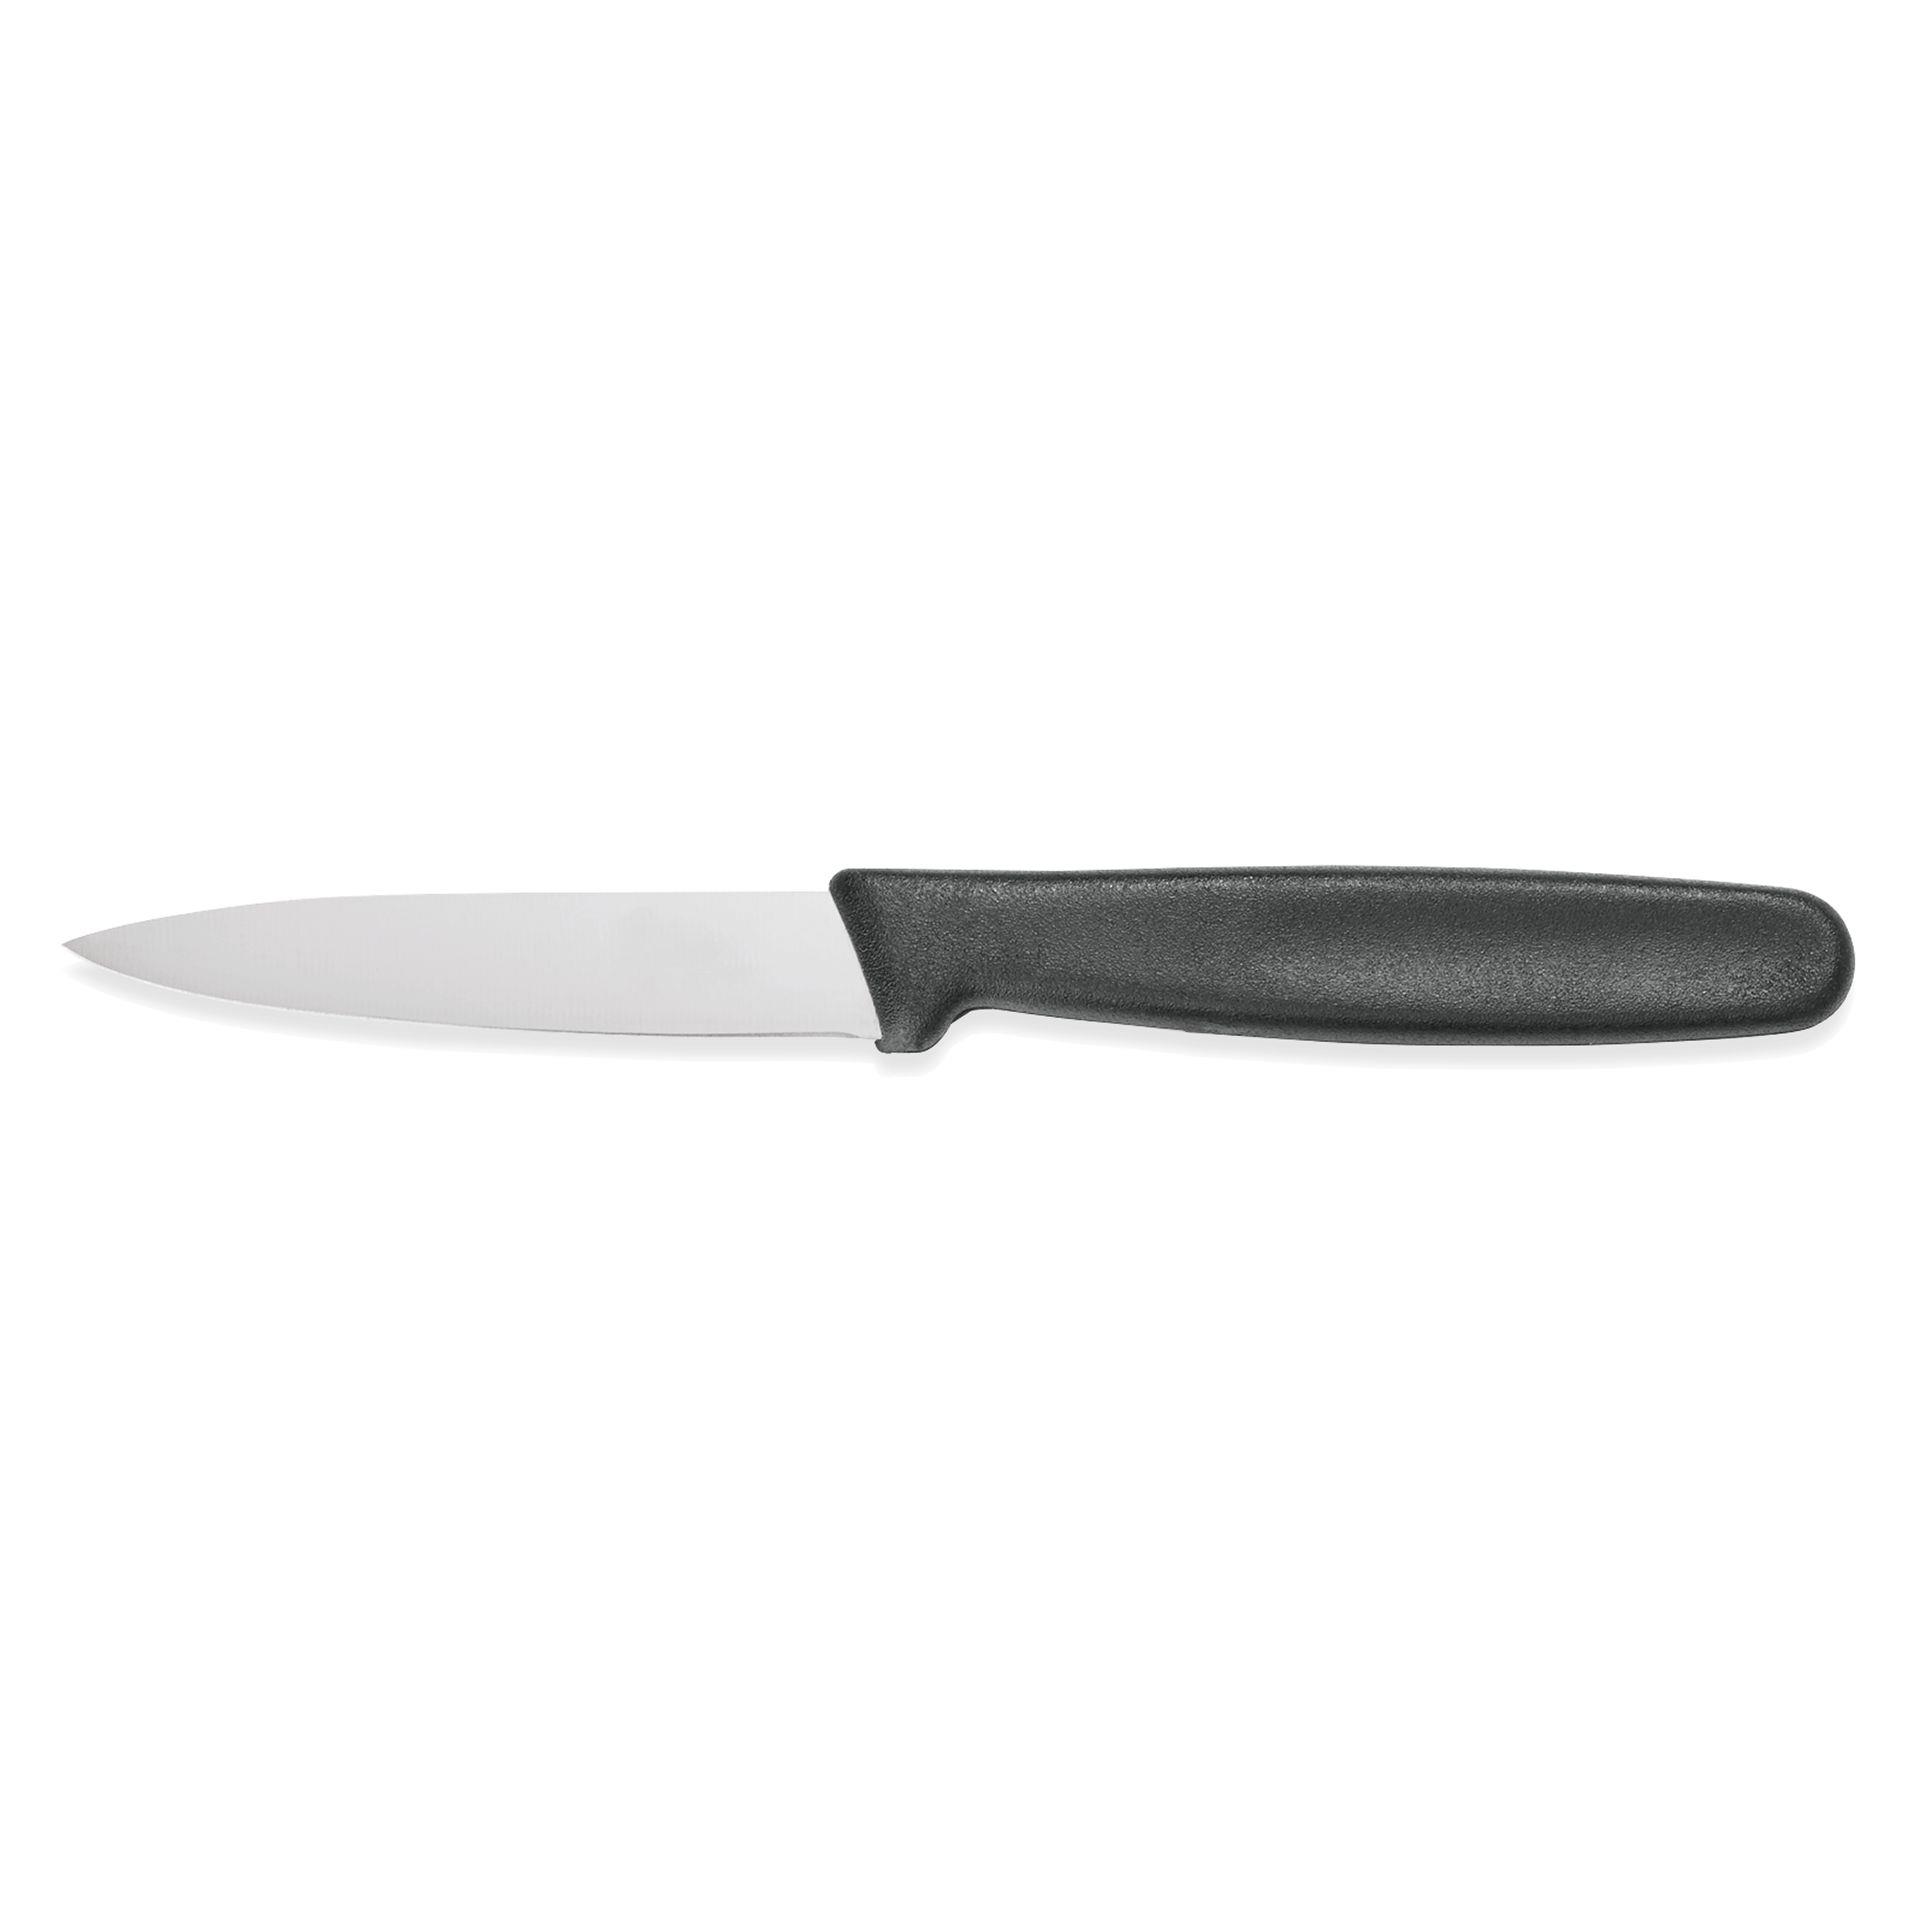 Нож 5 см лезвие. Нож филейный 18см для рыбы, черный HORECA Prime 28100.HR08000.180. Victorinox нож для овощей Swiss Classic 6.7403 8 см. Нож серрейторный кухонный Victorinox. Нож для стейка Victorinox Swiss Classic 6.7833.